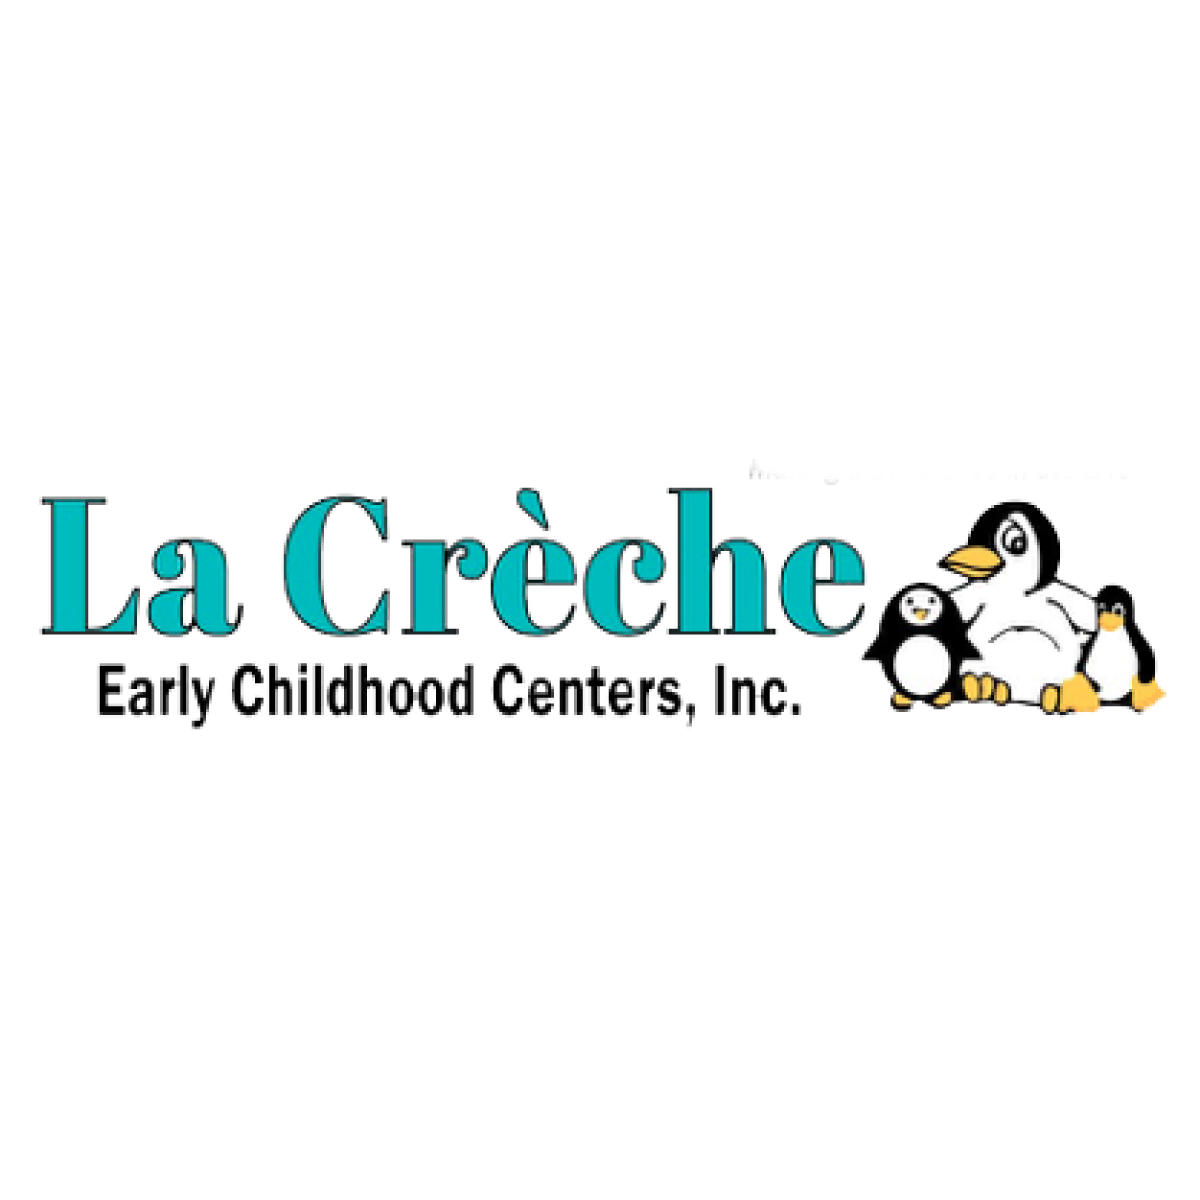 Centros de educación infantil LaCrèche
lacrechekids.org